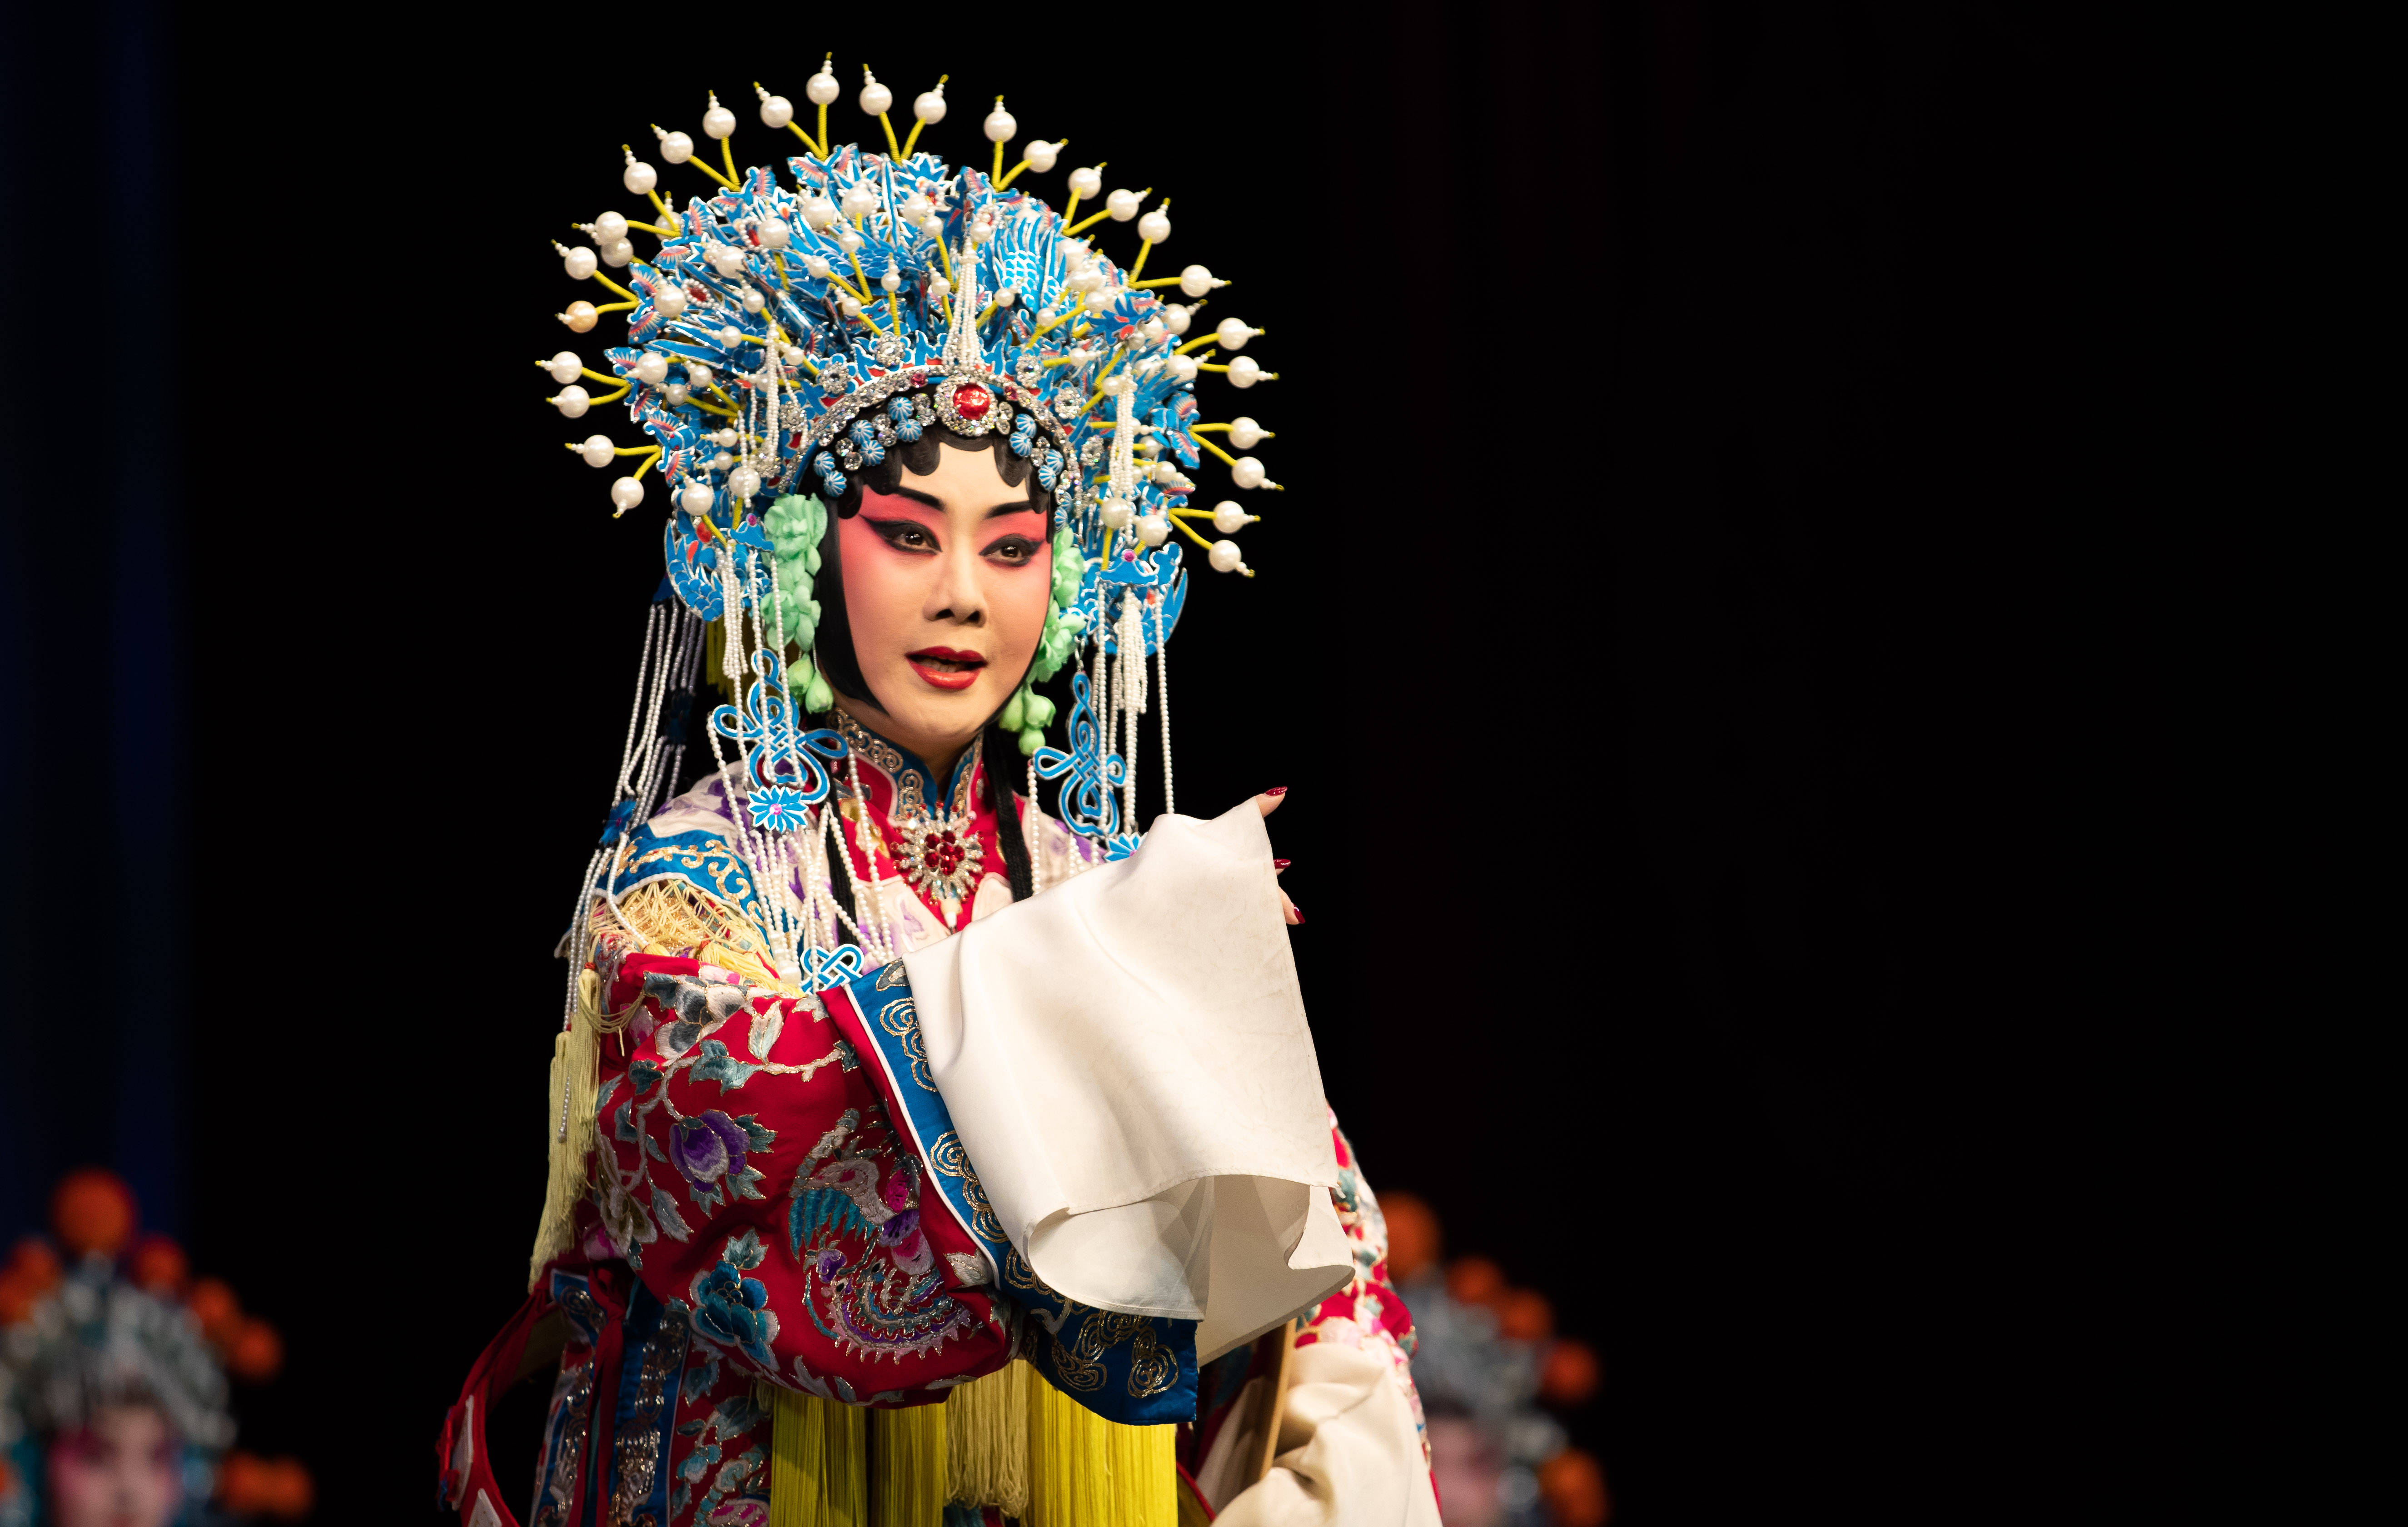 12月13日,京剧表演艺术家李胜素在表演京剧《大登殿》